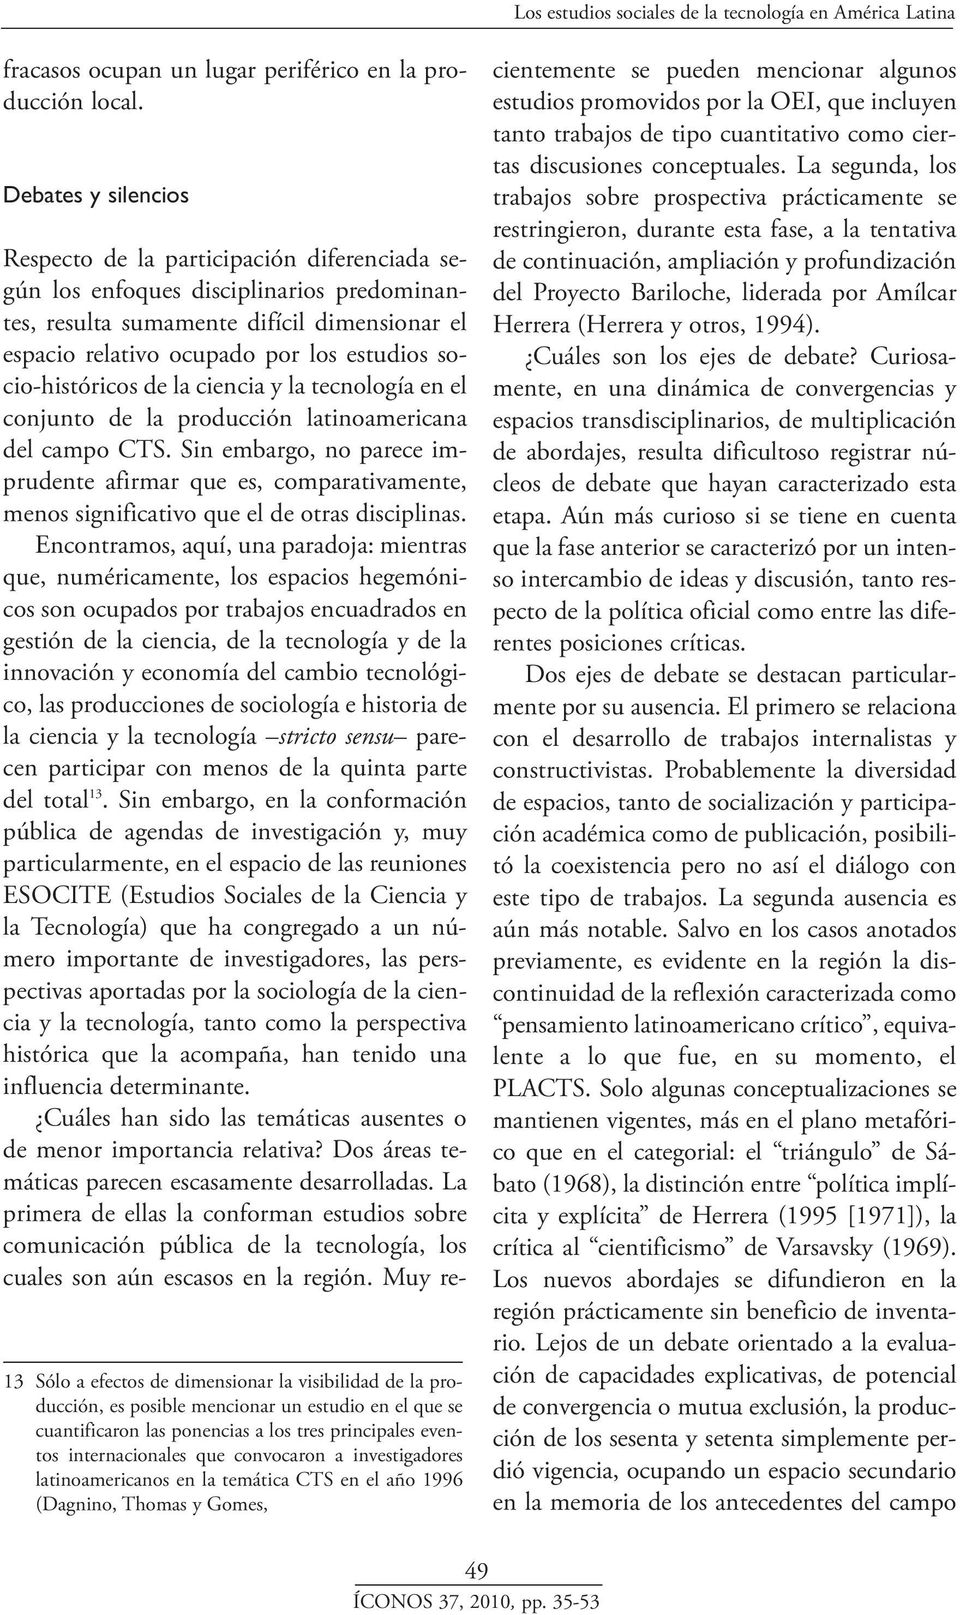 internacionales que convocaron a investigadores latinoamericanos en la temática CTS en el año 1996 (Dagnino, Thomas y Gomes, Respecto de la participación diferenciada según los enfoques